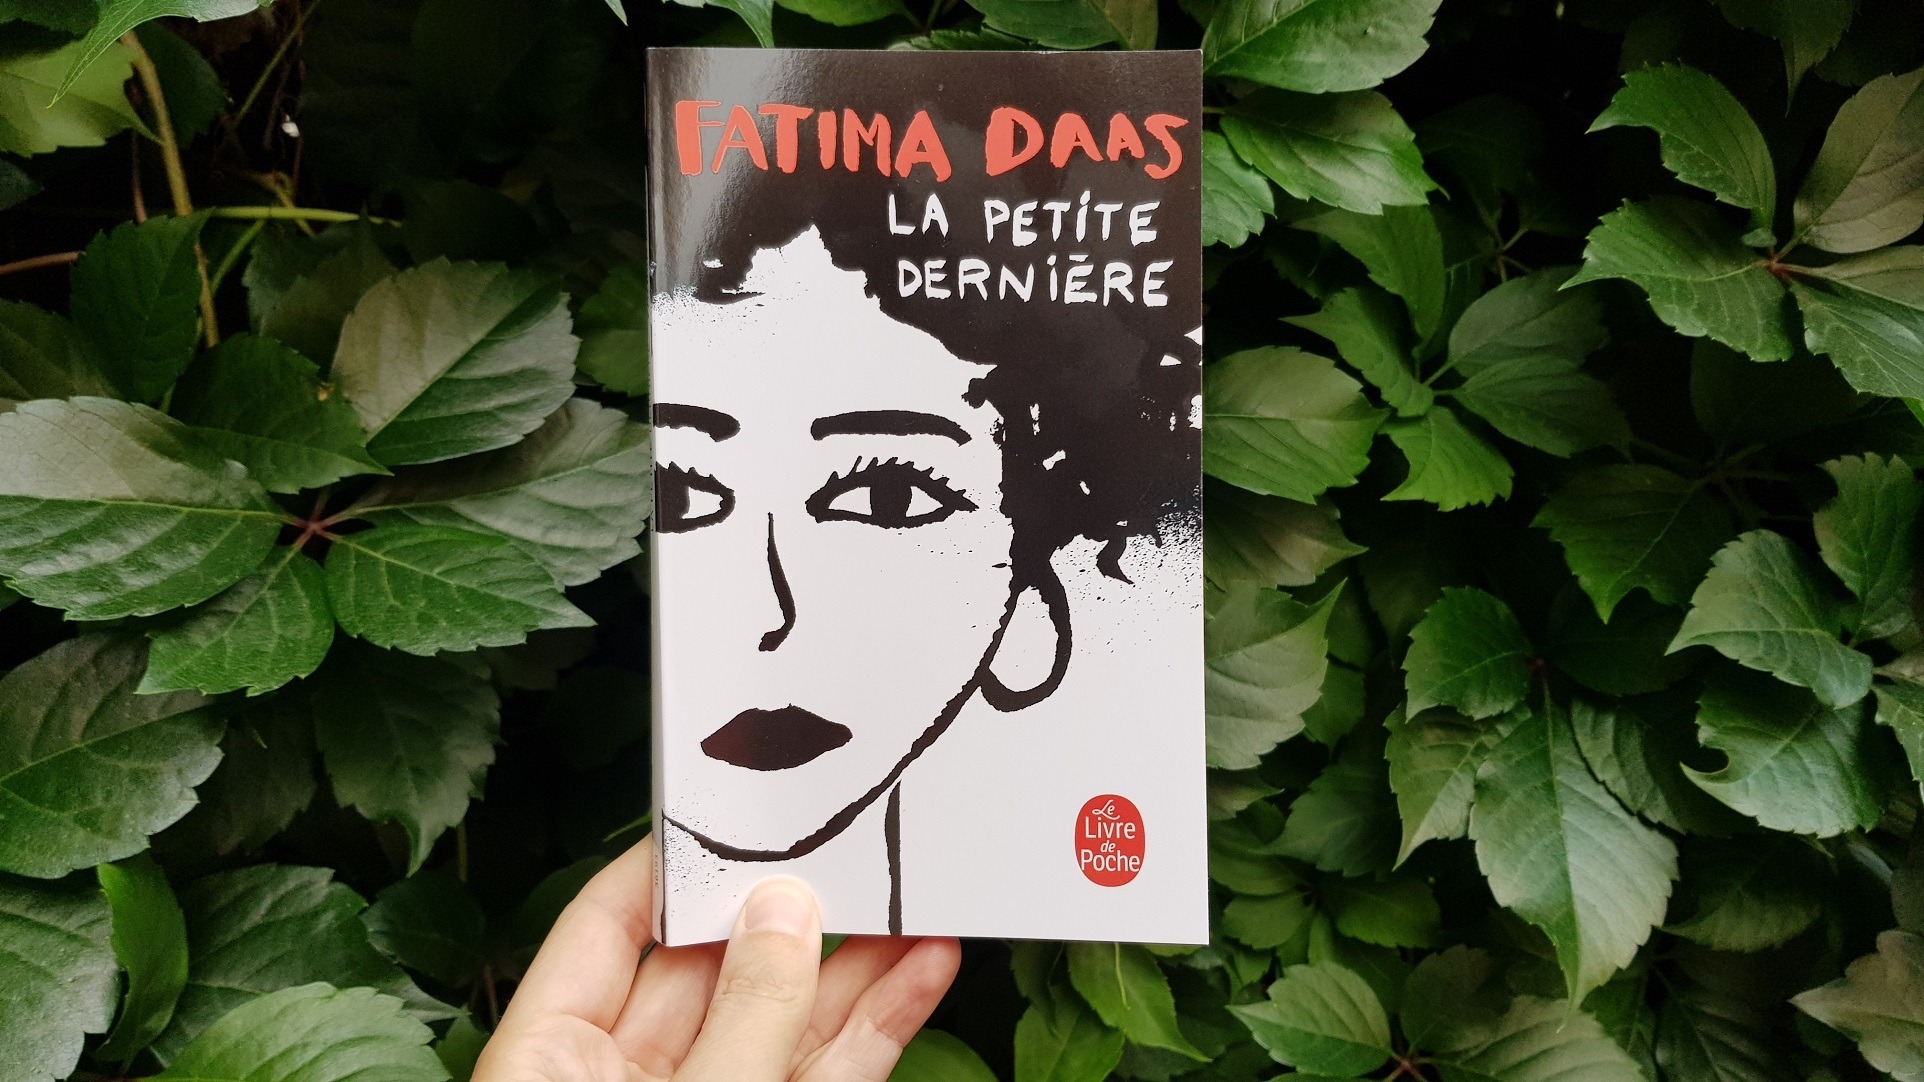 La petite dernière – Fatima Daas